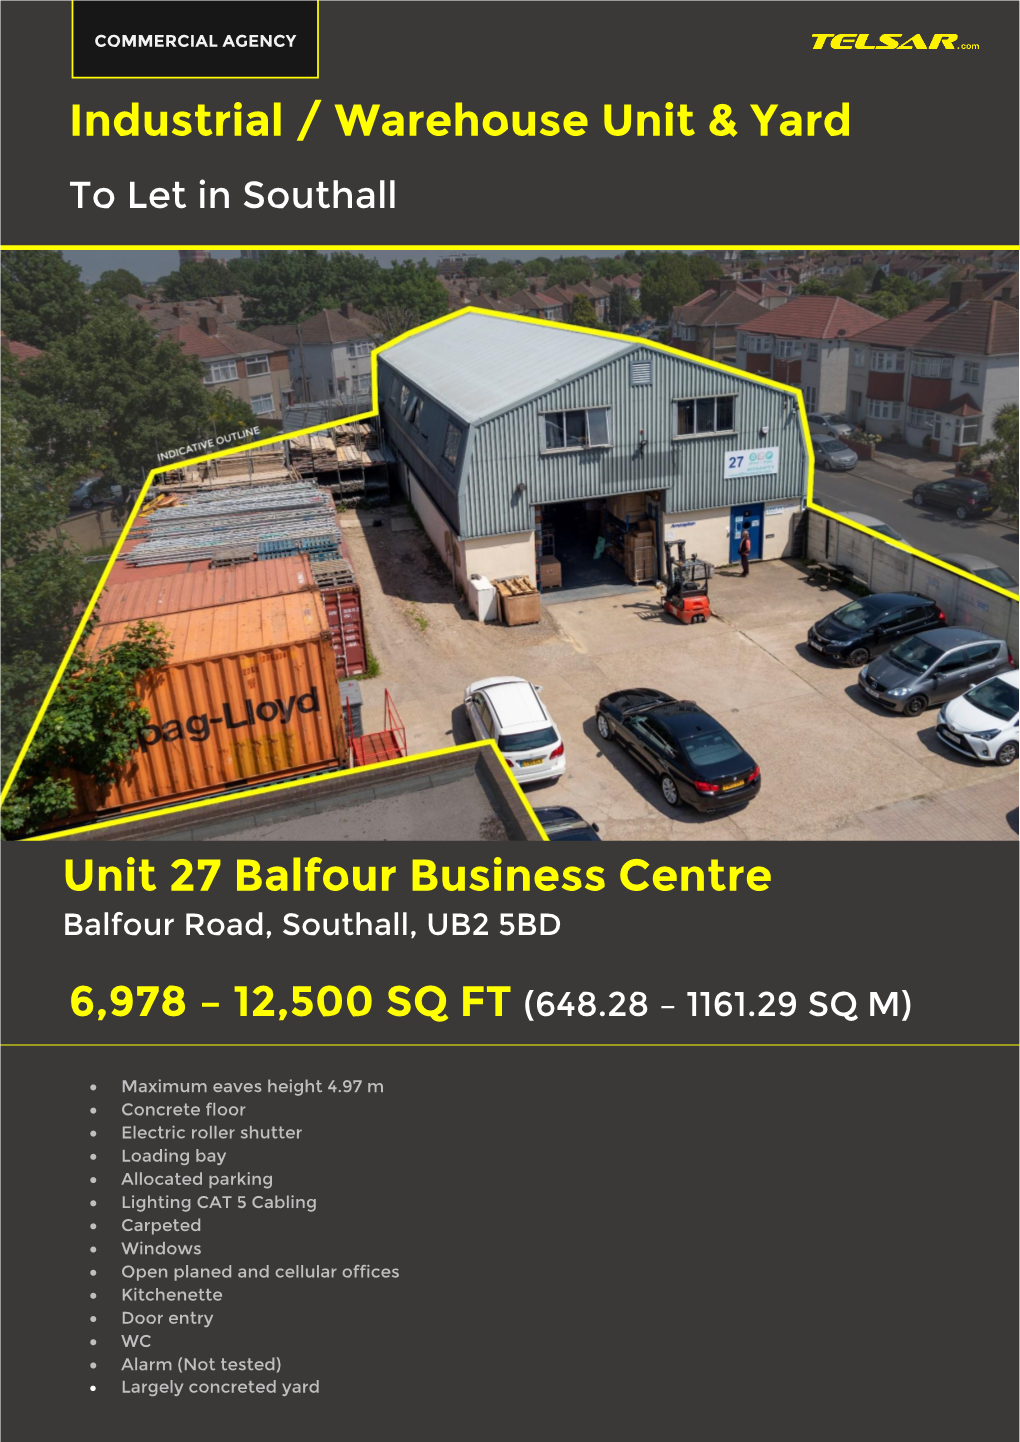 Industrial / Warehouse Unit & Yard Unit 27 Balfour Business Centre